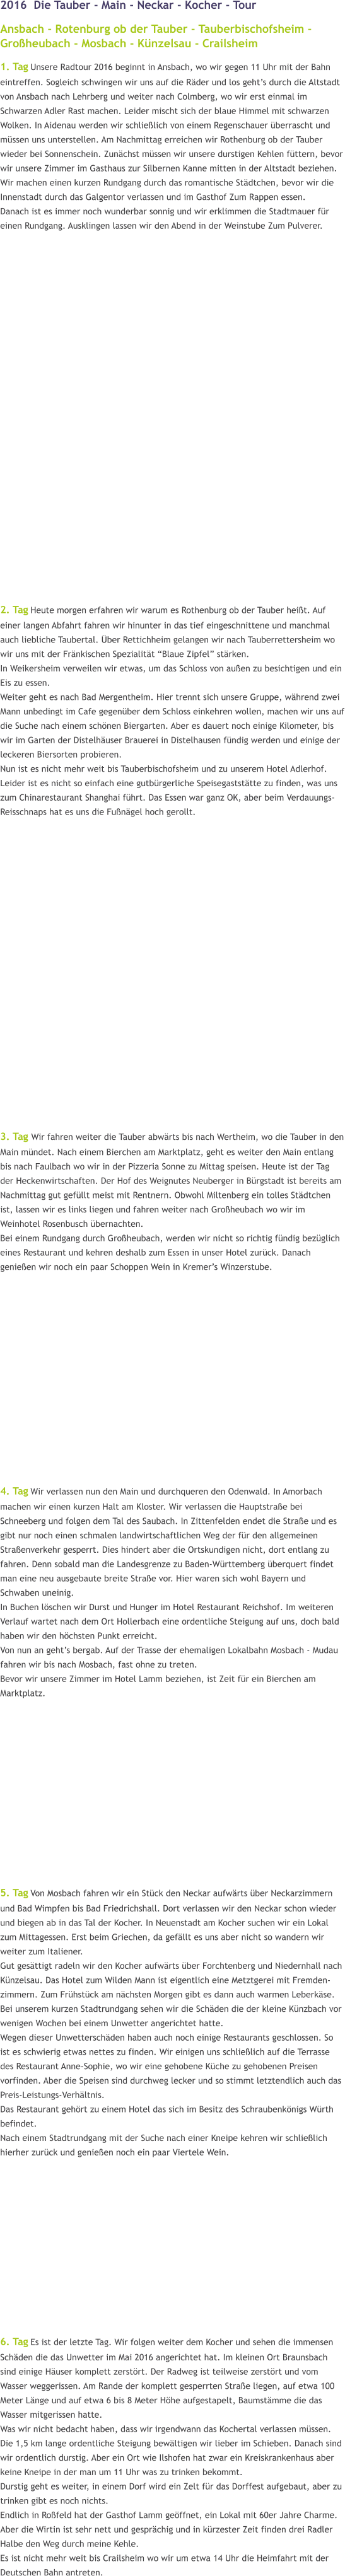 2016  Die Tauber - Main - Neckar - Kocher - Tour Ansbach - Rotenburg ob der Tauber - Tauberbischofsheim - Großheubach - Mosbach - Künzelsau - Crailsheim 1. Tag Unsere Radtour 2016 beginnt in Ansbach, wo wir gegen 11 Uhr mit der Bahn eintreffen. Sogleich schwingen wir uns auf die Räder und los geht’s durch die Altstadt von Ansbach nach Lehrberg und weiter nach Colmberg, wo wir erst einmal im Schwarzen Adler Rast machen. Leider mischt sich der blaue Himmel mit schwarzen Wolken. In Aidenau werden wir schließlich von einem Regenschauer überrascht und müssen uns unterstellen. Am Nachmittag erreichen wir Rothenburg ob der Tauber wieder bei Sonnenschein. Zunächst müssen wir unsere durstigen Kehlen füttern, bevor wir unsere Zimmer im Gasthaus zur Silbernen Kanne mitten in der Altstadt beziehen. Wir machen einen kurzen Rundgang durch das romantische Städtchen, bevor wir die Innenstadt durch das Galgentor verlassen und im Gasthof Zum Rappen essen. Danach ist es immer noch wunderbar sonnig und wir erklimmen die Stadtmauer für einen Rundgang. Ausklingen lassen wir den Abend in der Weinstube Zum Pulverer.                        2. Tag Heute morgen erfahren wir warum es Rothenburg ob der Tauber heißt. Auf einer langen Abfahrt fahren wir hinunter in das tief eingeschnittene und manchmal auch liebliche Taubertal. Über Rettichheim gelangen wir nach Tauberrettersheim wo wir uns mit der Fränkischen Spezialität “Blaue Zipfel” stärken.  In Weikersheim verweilen wir etwas, um das Schloss von außen zu besichtigen und ein Eis zu essen. Weiter geht es nach Bad Mergentheim. Hier trennt sich unsere Gruppe, während zwei Mann unbedingt im Cafe gegenüber dem Schloss einkehren wollen, machen wir uns auf die Suche nach einem schönen Biergarten. Aber es dauert noch einige Kilometer, bis wir im Garten der Distelhäuser Brauerei in Distelhausen fündig werden und einige der leckeren Biersorten probieren.  Nun ist es nicht mehr weit bis Tauberbischofsheim und zu unserem Hotel Adlerhof. Leider ist es nicht so einfach eine gutbürgerliche Speisegaststätte zu finden, was uns zum Chinarestaurant Shanghai führt. Das Essen war ganz OK, aber beim Verdauungs- Reisschnaps hat es uns die Fußnägel hoch gerollt.                     3. Tag Wir fahren weiter die Tauber abwärts bis nach Wertheim, wo die Tauber in den Main mündet. Nach einem Bierchen am Marktplatz, geht es weiter den Main entlang bis nach Faulbach wo wir in der Pizzeria Sonne zu Mittag speisen. Heute ist der Tag der Heckenwirtschaften. Der Hof des Weignutes Neuberger in Bürgstadt ist bereits am Nachmittag gut gefüllt meist mit Rentnern. Obwohl Miltenberg ein tolles Städtchen ist, lassen wir es links liegen und fahren weiter nach Großheubach wo wir im Weinhotel Rosenbusch übernachten.  Bei einem Rundgang durch Großheubach, werden wir nicht so richtig fündig bezüglich eines Restaurant und kehren deshalb zum Essen in unser Hotel zurück. Danach genießen wir noch ein paar Schoppen Wein in Kremer’s Winzerstube.              4. Tag Wir verlassen nun den Main und durchqueren den Odenwald. In Amorbach machen wir einen kurzen Halt am Kloster. Wir verlassen die Hauptstraße bei Schneeberg und folgen dem Tal des Saubach. In Zittenfelden endet die Straße und es gibt nur noch einen schmalen landwirtschaftlichen Weg der für den allgemeinen Straßenverkehr gesperrt. Dies hindert aber die Ortskundigen nicht, dort entlang zu fahren. Denn sobald man die Landesgrenze zu Baden-Württemberg überquert findet man eine neu ausgebaute breite Straße vor. Hier waren sich wohl Bayern und Schwaben uneinig. In Buchen löschen wir Durst und Hunger im Hotel Restaurant Reichshof. Im weiteren Verlauf wartet nach dem Ort Hollerbach eine ordentliche Steigung auf uns, doch bald haben wir den höchsten Punkt erreicht. Von nun an geht’s bergab. Auf der Trasse der ehemaligen Lokalbahn Mosbach - Mudau fahren wir bis nach Mosbach, fast ohne zu treten.  Bevor wir unsere Zimmer im Hotel Lamm beziehen, ist Zeit für ein Bierchen am Marktplatz.                5. Tag Von Mosbach fahren wir ein Stück den Neckar aufwärts über Neckarzimmern und Bad Wimpfen bis Bad Friedrichshall. Dort verlassen wir den Neckar schon wieder und biegen ab in das Tal der Kocher. In Neuenstadt am Kocher suchen wir ein Lokal zum Mittagessen. Erst beim Griechen, da gefällt es uns aber nicht so wandern wir weiter zum Italiener. Gut gesättigt radeln wir den Kocher aufwärts über Forchtenberg und Niedernhall nach Künzelsau. Das Hotel zum Wilden Mann ist eigentlich eine Metztgerei mit Fremden-zimmern. Zum Frühstück am nächsten Morgen gibt es dann auch warmen Leberkäse. Bei unserem kurzen Stadtrundgang sehen wir die Schäden die der kleine Künzbach vor wenigen Wochen bei einem Unwetter angerichtet hatte. Wegen dieser Unwetterschäden haben auch noch einige Restaurants geschlossen. So ist es schwierig etwas nettes zu finden. Wir einigen uns schließlich auf die Terrasse des Restaurant Anne-Sophie, wo wir eine gehobene Küche zu gehobenen Preisen vorfinden. Aber die Speisen sind durchweg lecker und so stimmt letztendlich auch das Preis-Leistungs-Verhältnis. Das Restaurant gehört zu einem Hotel das sich im Besitz des Schraubenkönigs Würth befindet. Nach einem Stadtrundgang mit der Suche nach einer Kneipe kehren wir schließlich hierher zurück und genießen noch ein paar Viertele Wein.               6. Tag Es ist der letzte Tag. Wir folgen weiter dem Kocher und sehen die immensen Schäden die das Unwetter im Mai 2016 angerichtet hat. Im kleinen Ort Braunsbach sind einige Häuser komplett zerstört. Der Radweg ist teilweise zerstört und vom Wasser weggerissen. Am Rande der komplett gesperrten Straße liegen, auf etwa 100 Meter Länge und auf etwa 6 bis 8 Meter Höhe aufgestapelt, Baumstämme die das Wasser mitgerissen hatte. Was wir nicht bedacht haben, dass wir irgendwann das Kochertal verlassen müssen. Die 1,5 km lange ordentliche Steigung bewältigen wir lieber im Schieben. Danach sind wir ordentlich durstig. Aber ein Ort wie Ilshofen hat zwar ein Kreiskrankenhaus aber keine Kneipe in der man um 11 Uhr was zu trinken bekommt. Durstig geht es weiter, in einem Dorf wird ein Zelt für das Dorffest aufgebaut, aber zu trinken gibt es noch nichts.  Endlich in Roßfeld hat der Gasthof Lamm geöffnet, ein Lokal mit 60er Jahre Charme. Aber die Wirtin ist sehr nett und gesprächig und in kürzester Zeit finden drei Radler Halbe den Weg durch meine Kehle. Es ist nicht mehr weit bis Crailsheim wo wir um etwa 14 Uhr die Heimfahrt mit der Deutschen Bahn antreten.